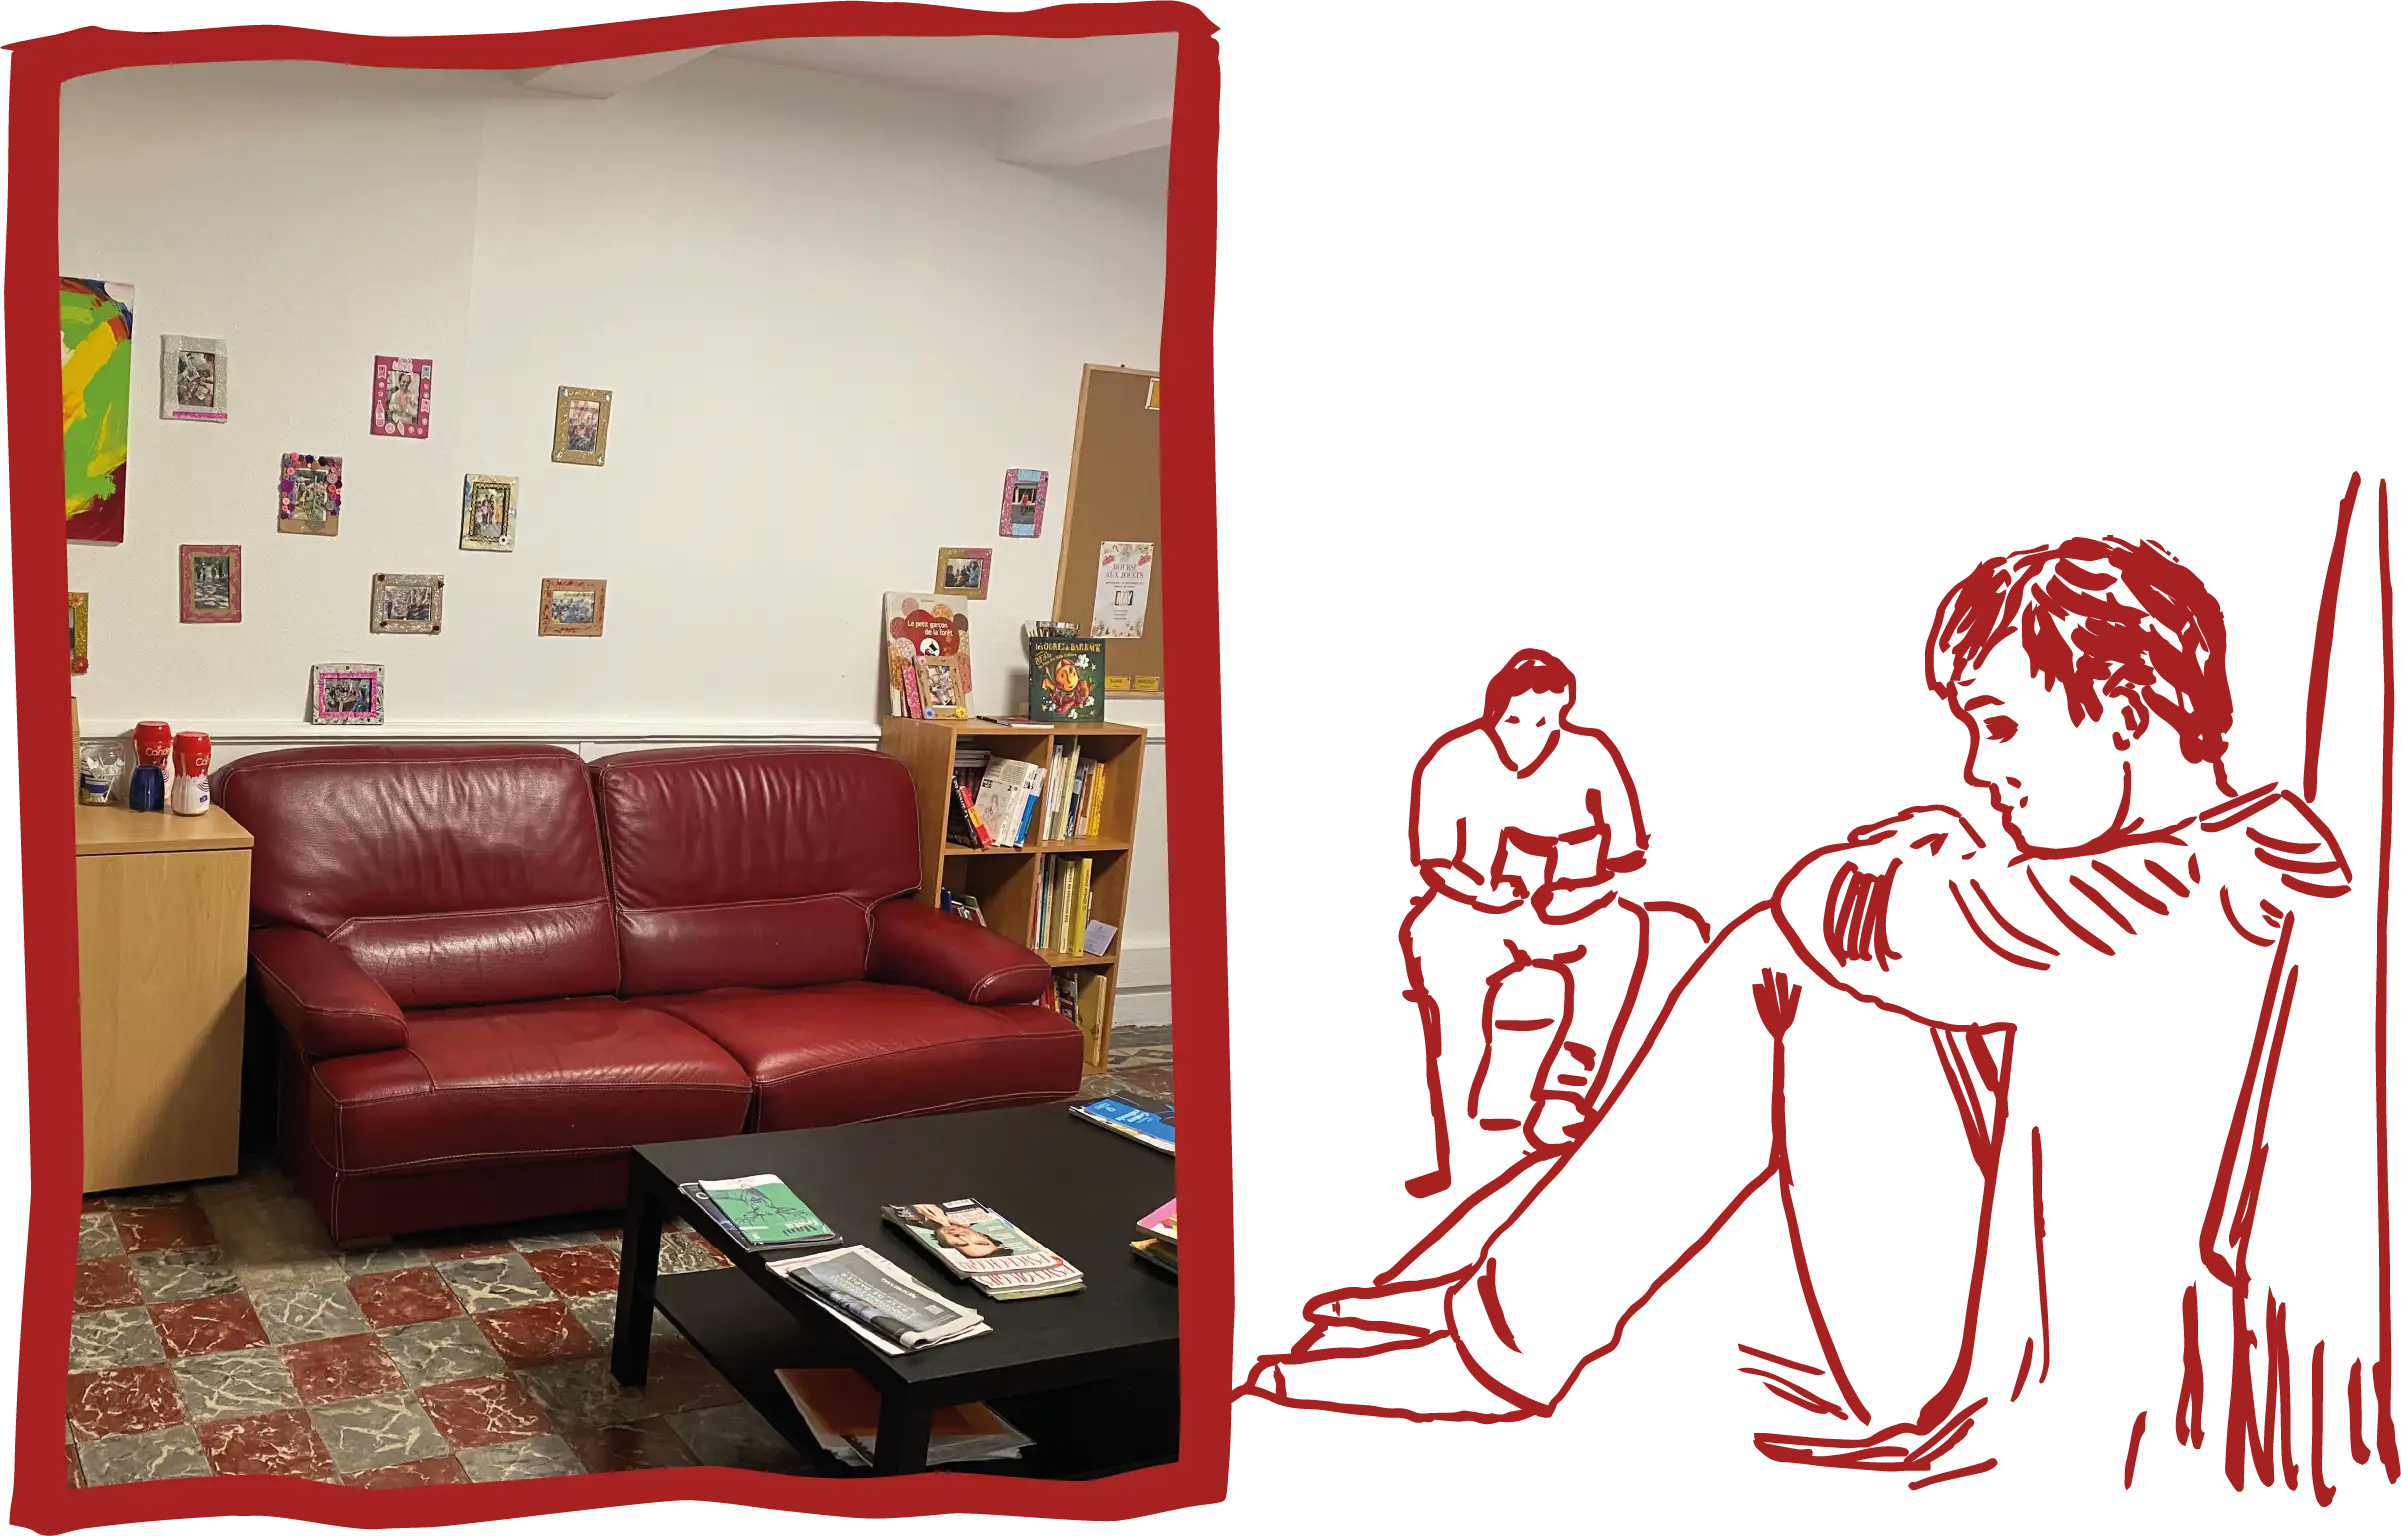 Sur la gauche une photo d'une pièce avec un canapé rouge et une table basse. Sur la droite un dessin au trait rouge d'une personne assise sur son lit, la tête posée sur ses genoux.